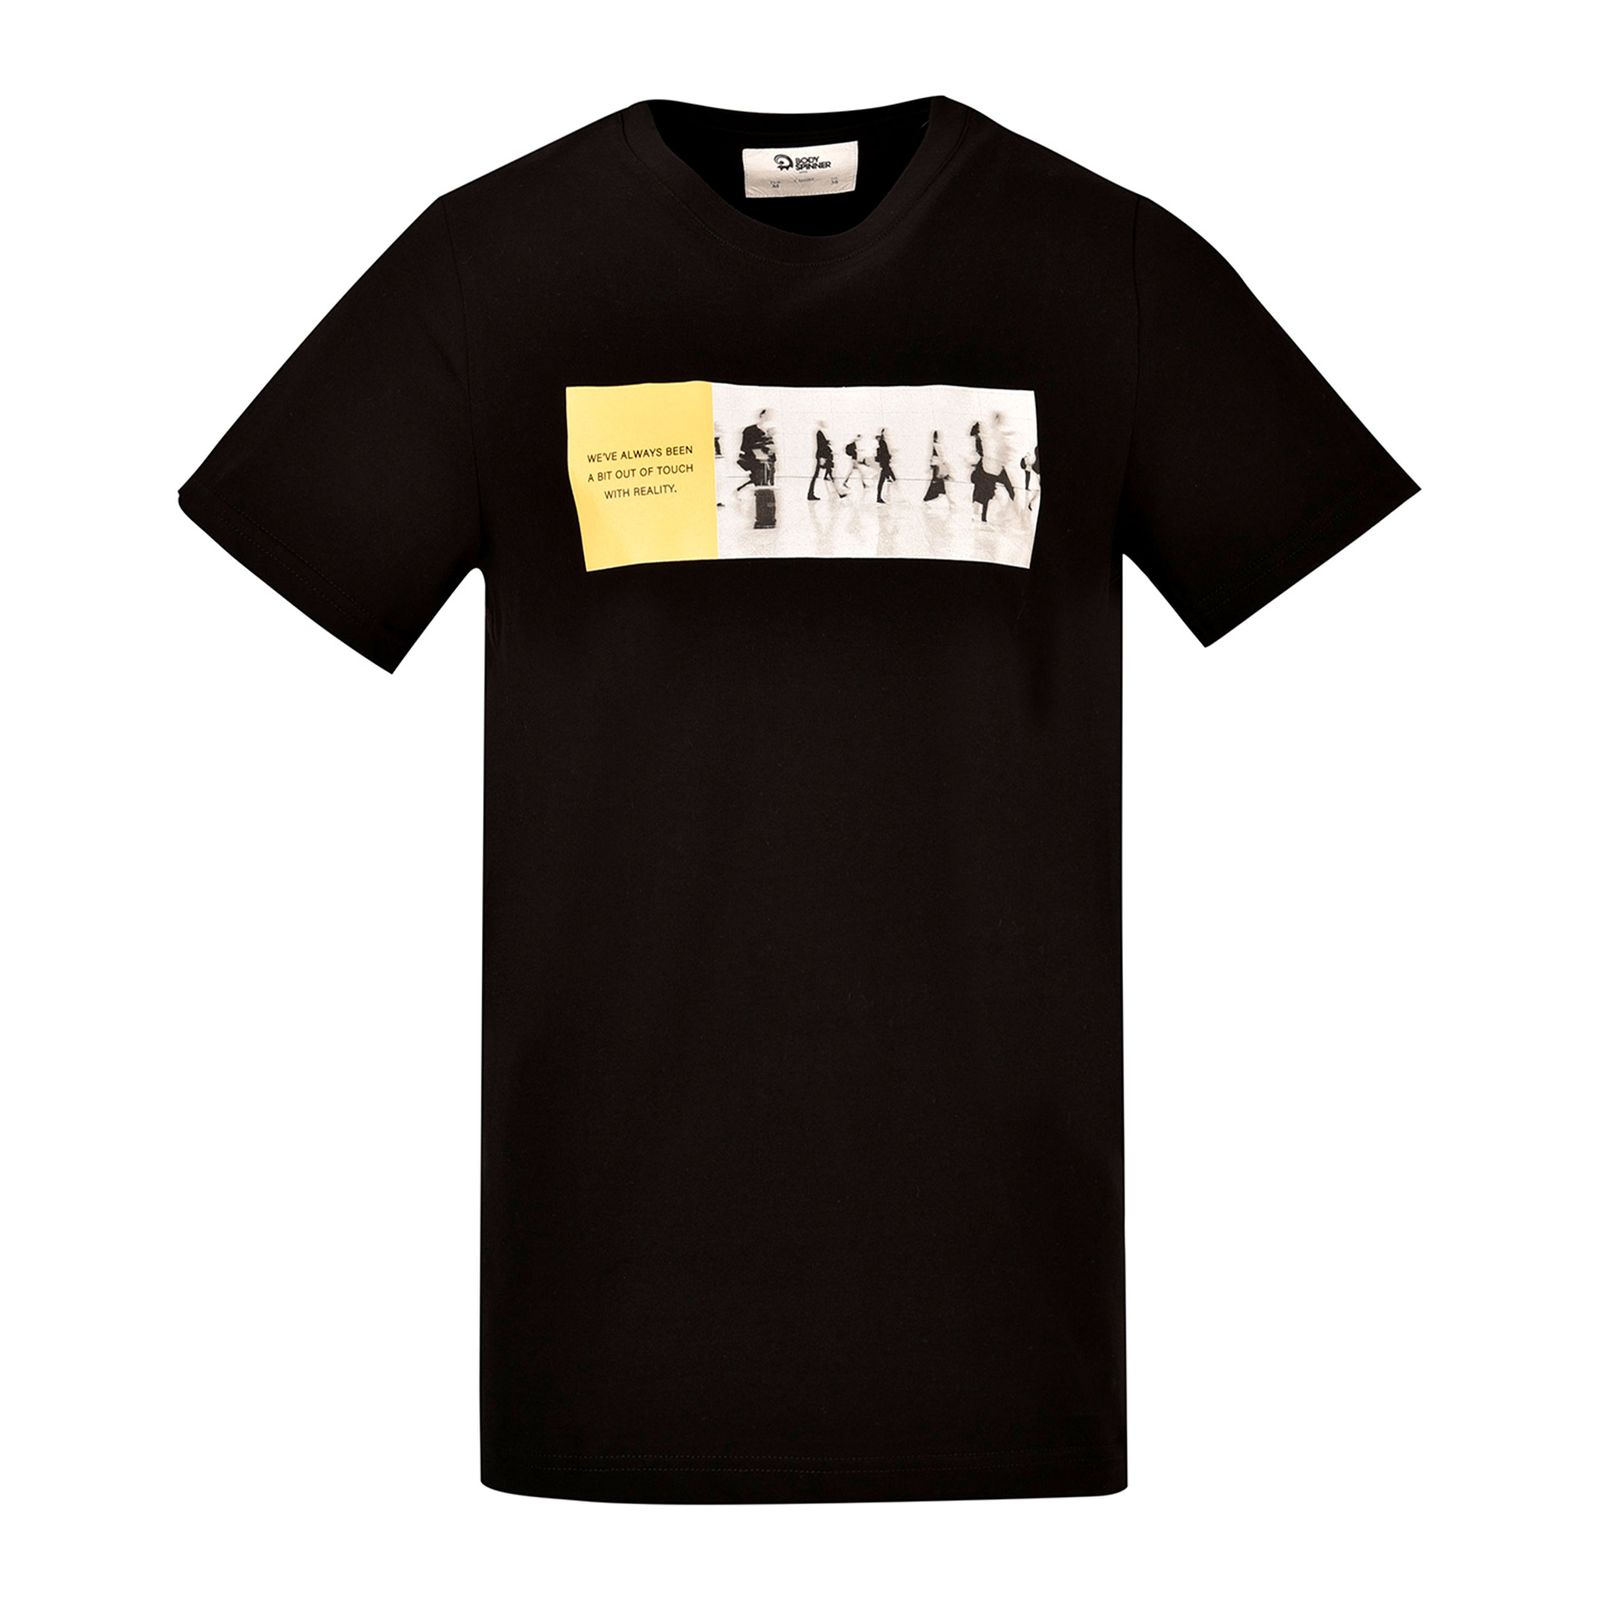 تی شرت آستین کوتاه مردانه بادی اسپینر مدل 3446 رنگ مشکی -  - 1